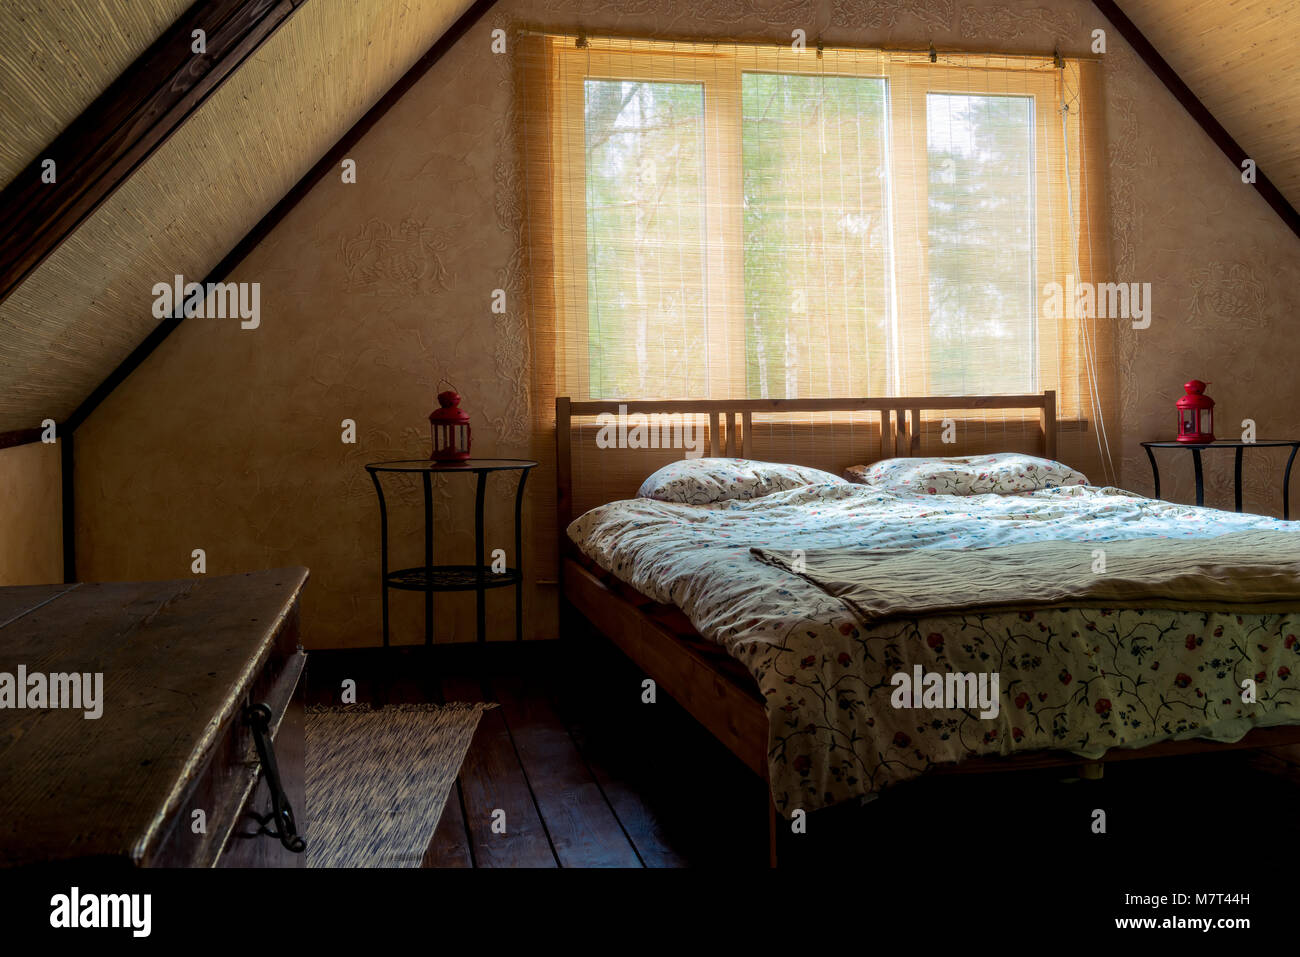 Chambres à proximité d'une fenêtre dans une chambre au dernier étage d'une maison en bois, sous un toit Banque D'Images